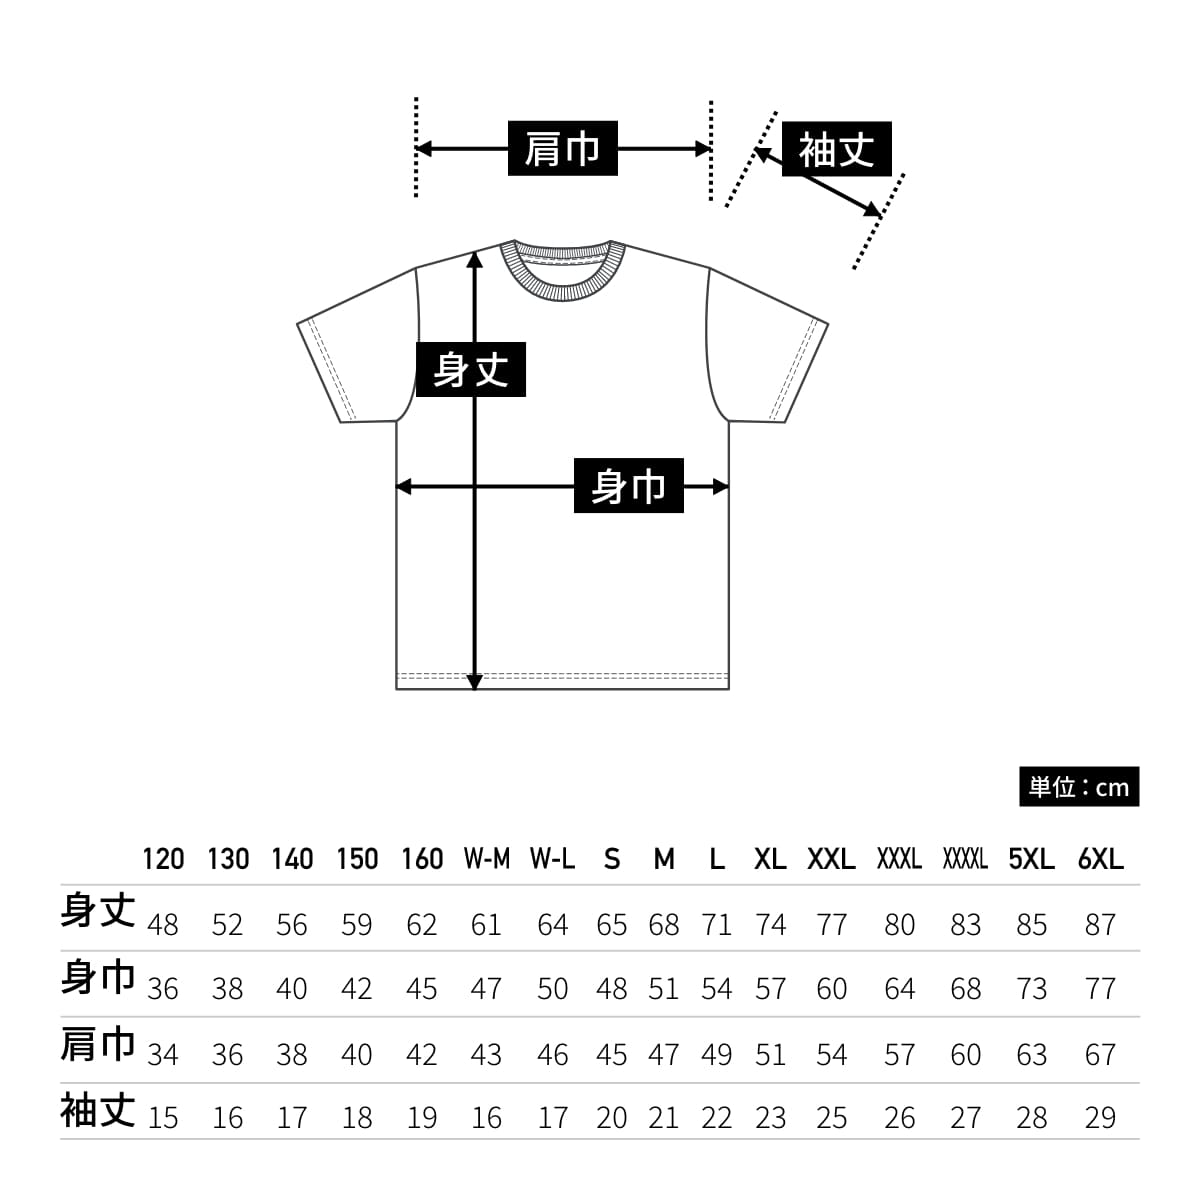 4.1オンスドライTシャツ | キッズ | 1枚 | 5900-02 | ホワイト